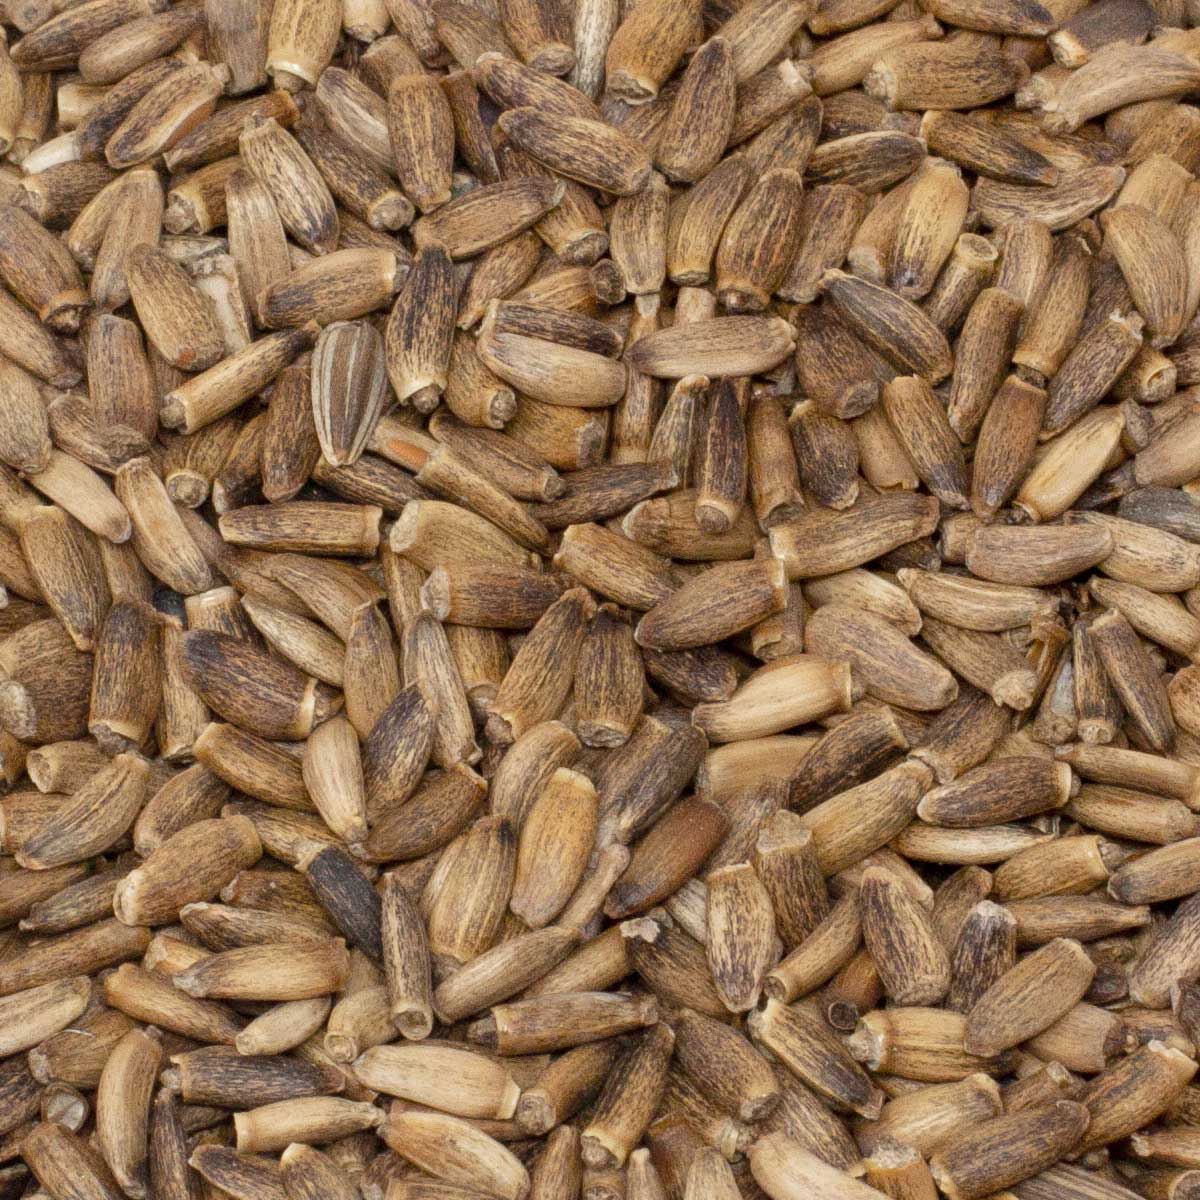 Leimüller semințe de ciulin